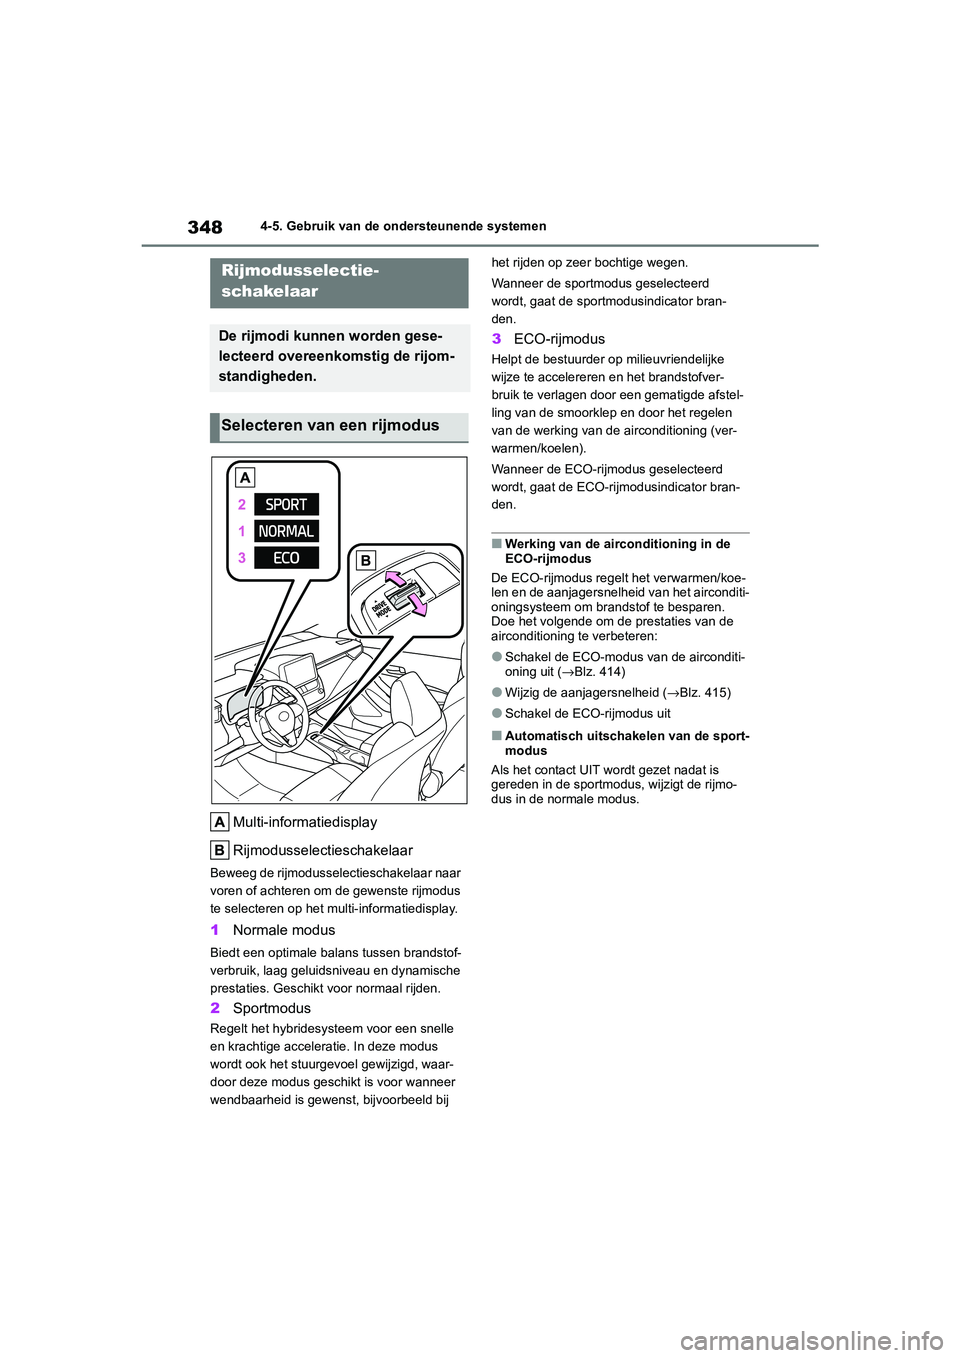 TOYOTA COROLLA HYBRID 2020  Instructieboekje (in Dutch) 348
COROLLA HV_TMMT_EE4-5. Gebruik van de ondersteunende systemen
Multi-informatiedisplay
Rijmodusselectieschakelaar
Beweeg de rijmodusselectieschakelaar naar 
voren of achteren om de gewenste rijmodu